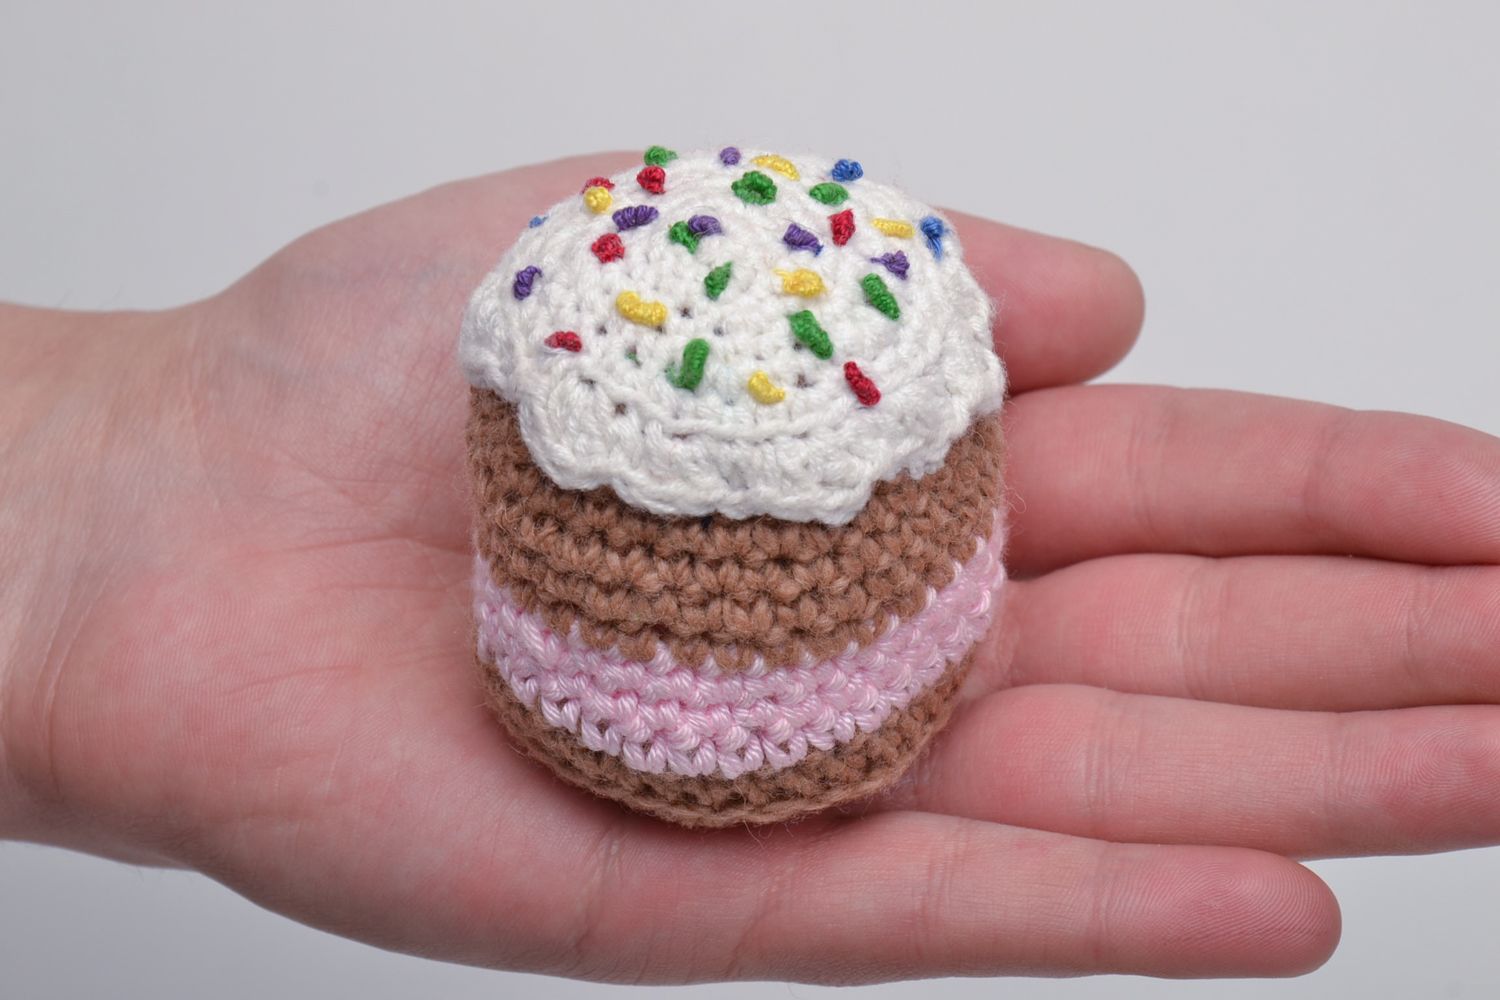 Soft crochet toy cake photo 5